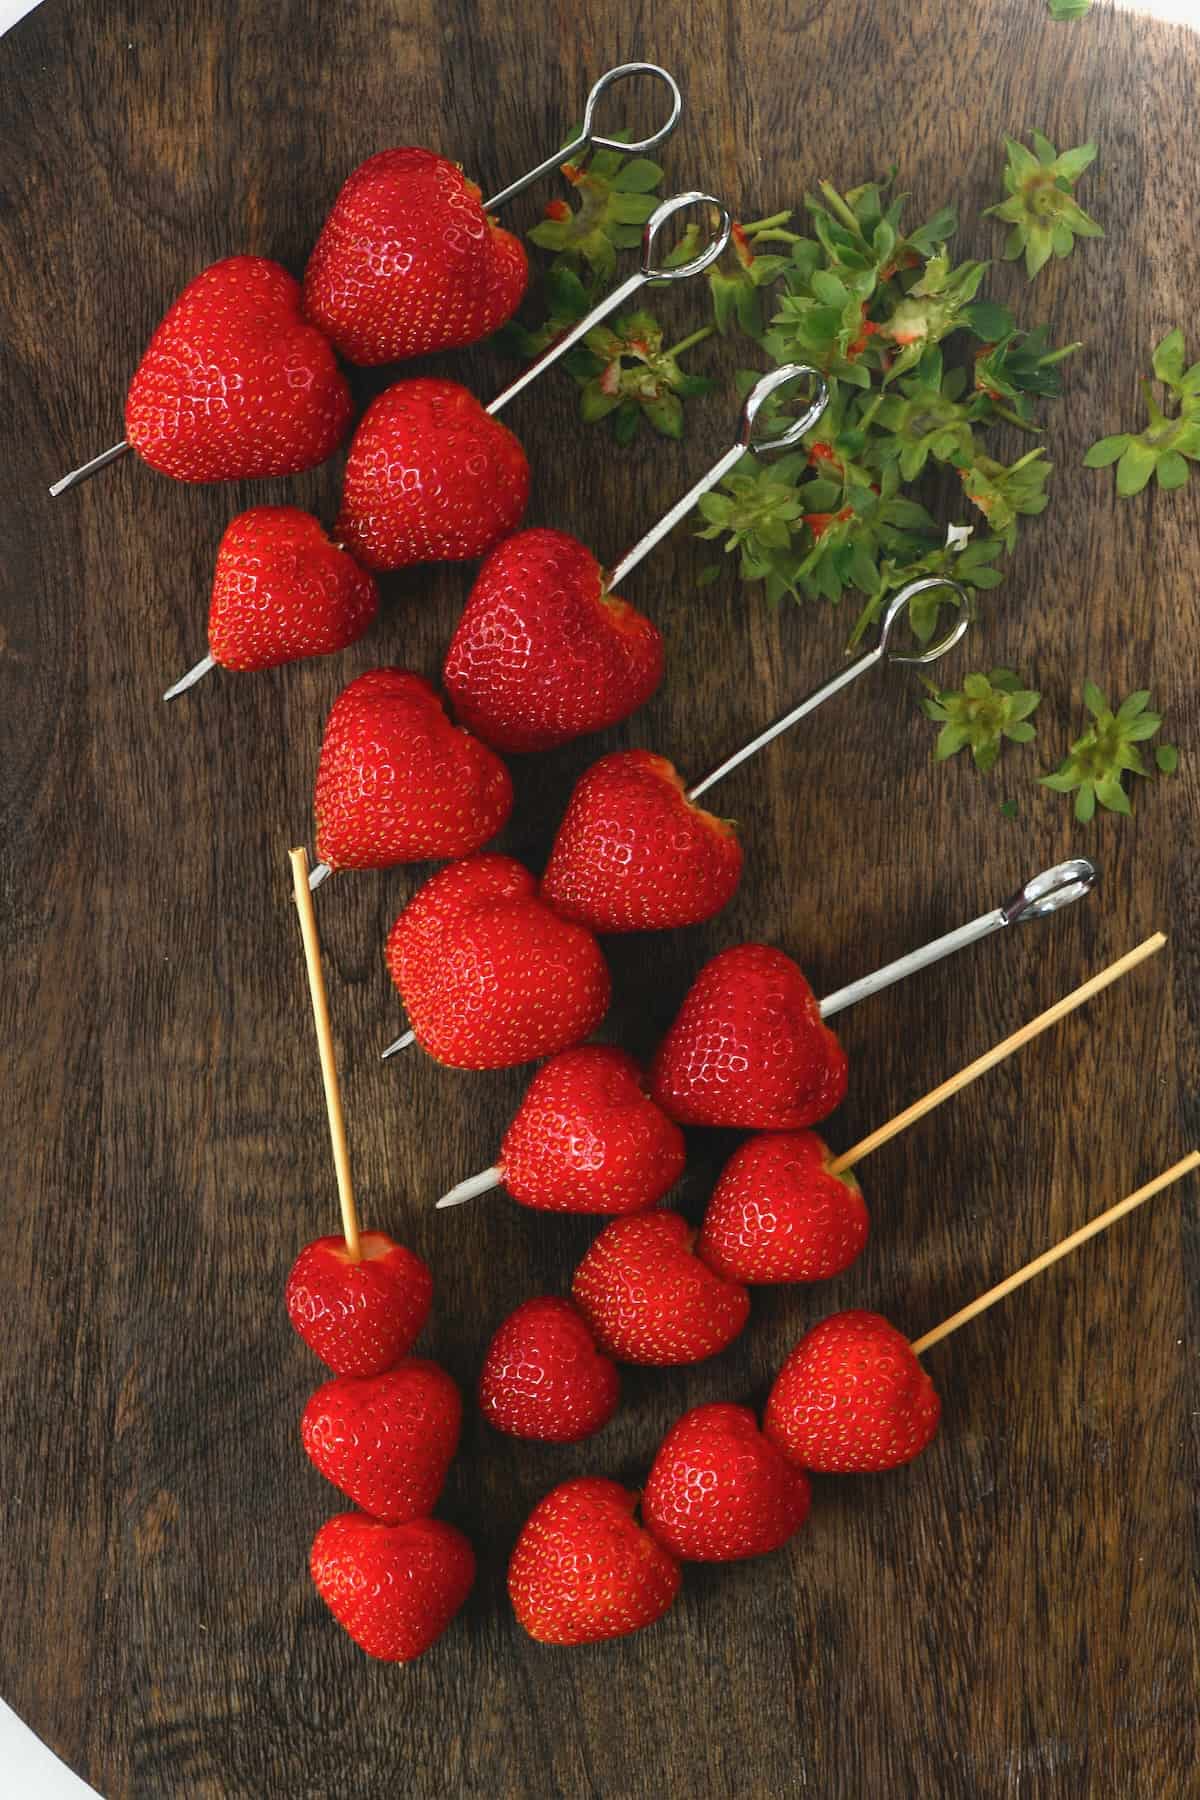 Strawberries arranged on skewers